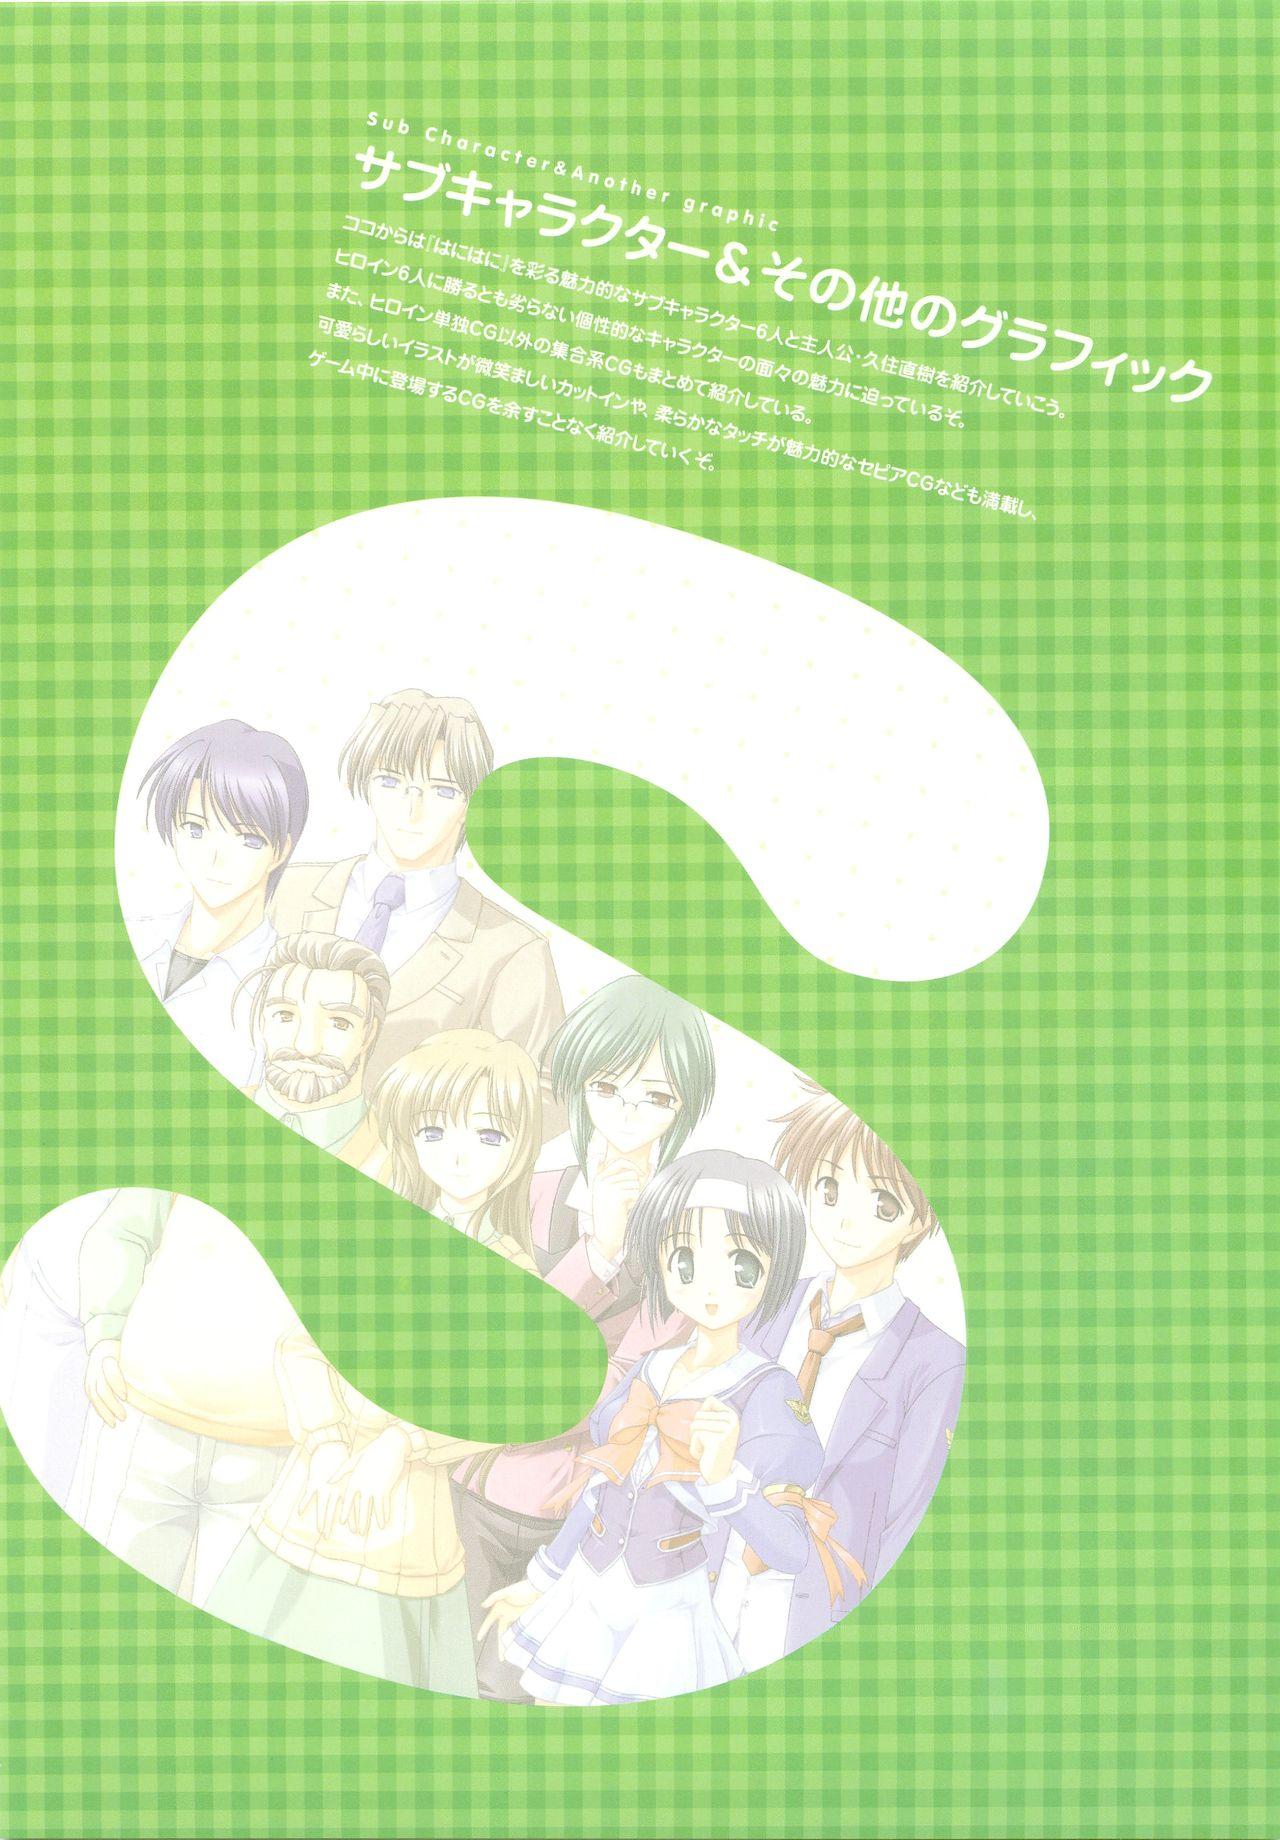 Tsuki wa Higashi ni Hi wa Nishi ni - Operation Sanctuary - Visual Fan Book Shokai Ban 183